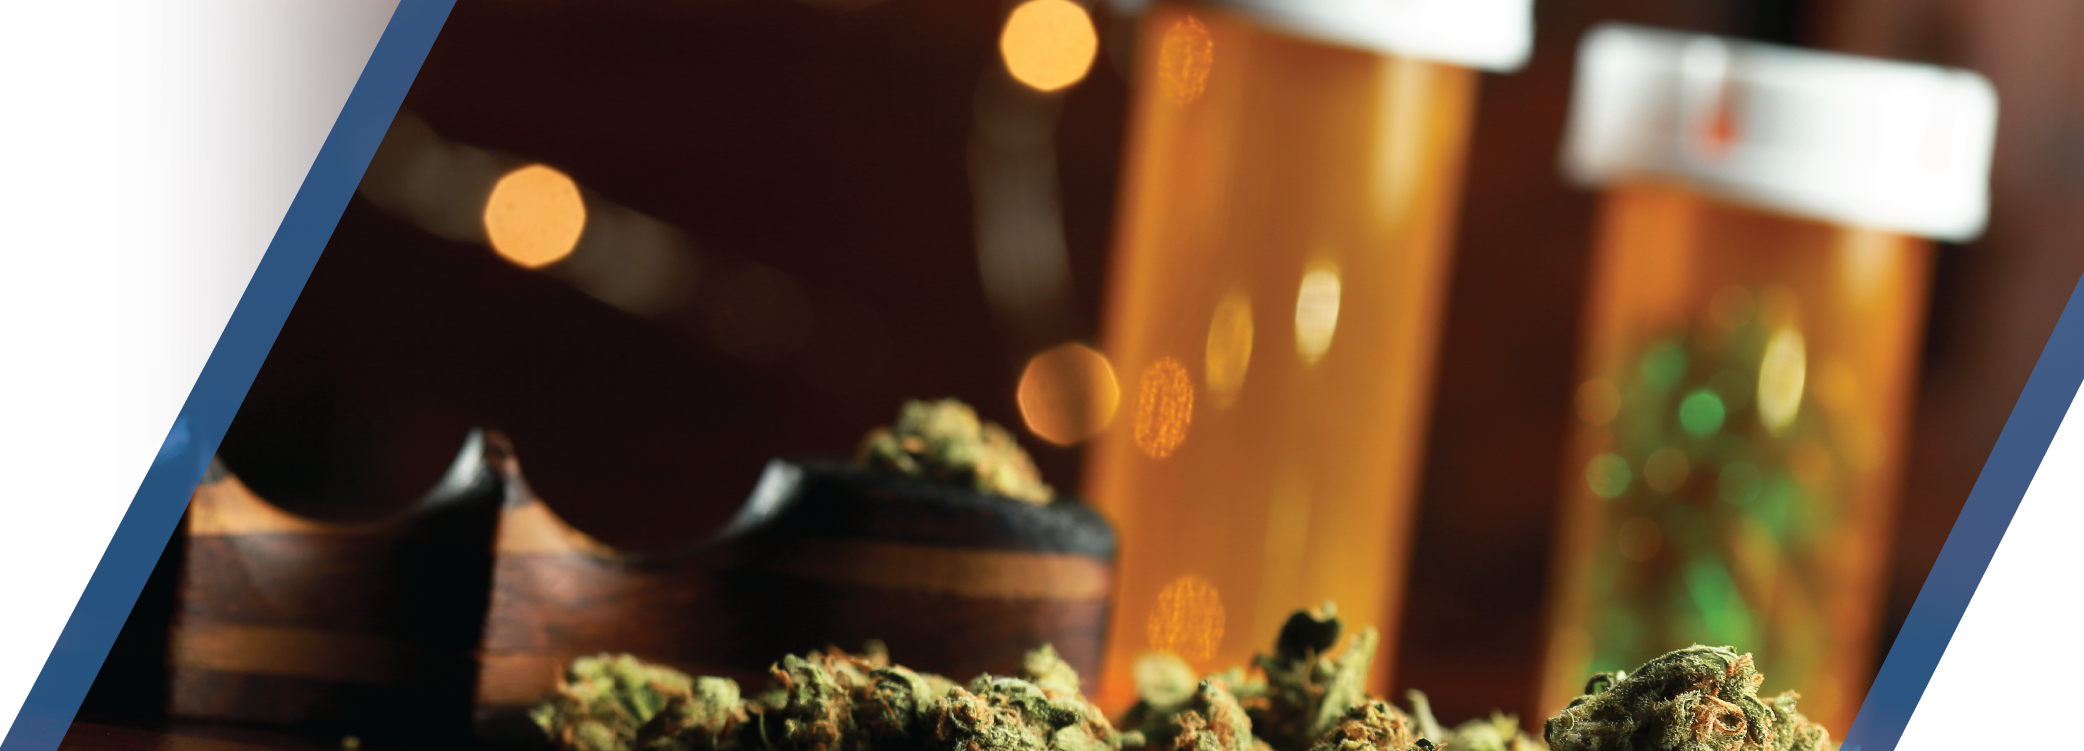 Ohio Legislature Cultivating Medical Marijuana Access Expansion